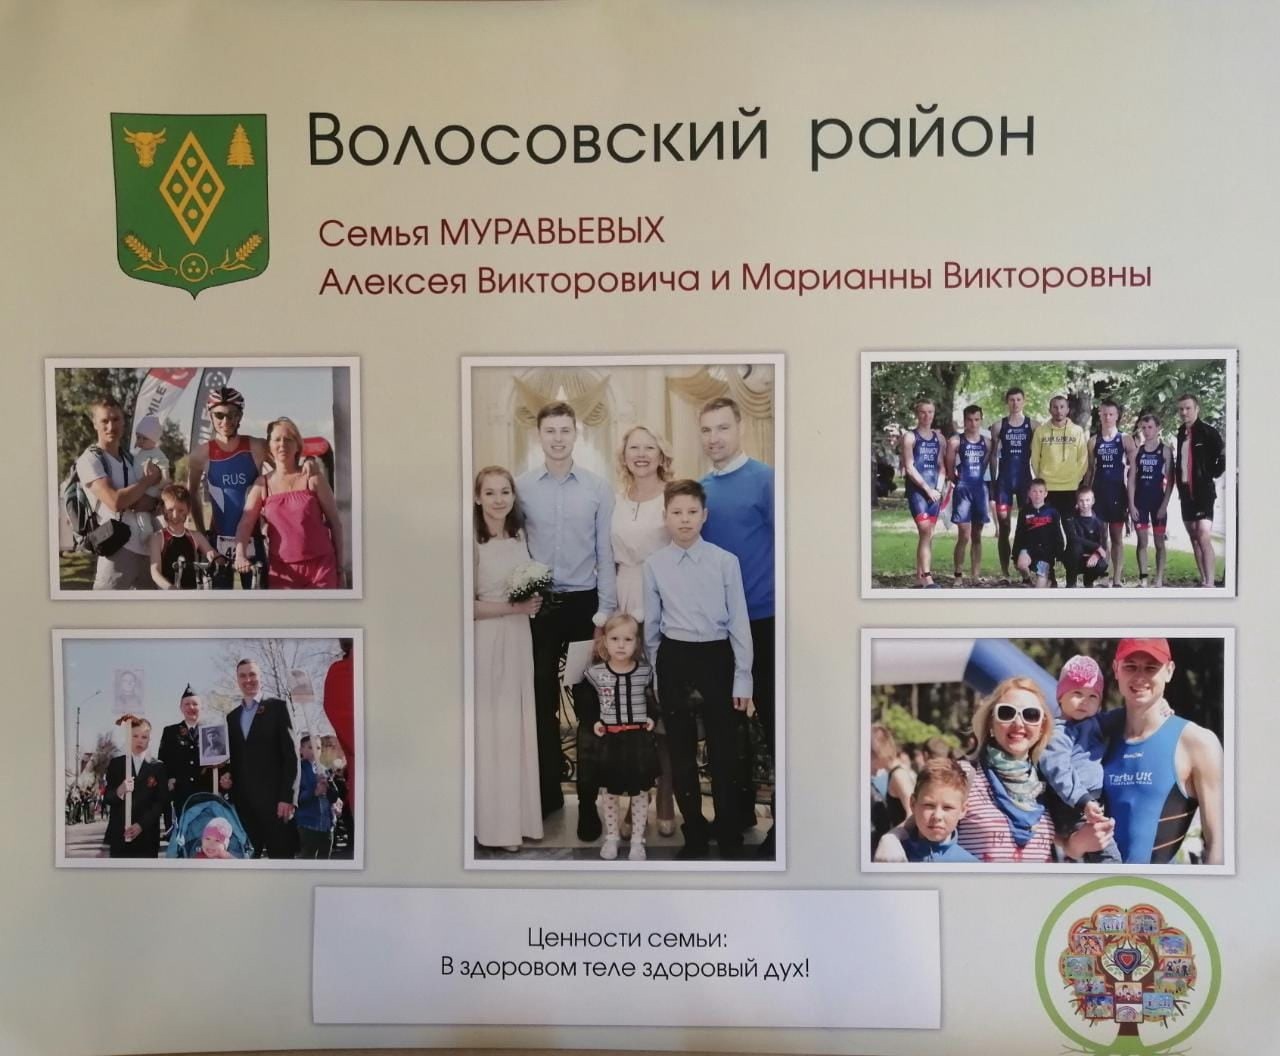 Семья Муравьёвых из Волосово были высоко отмечены за заслуги в воспитании детей и сохранение семейных традиций